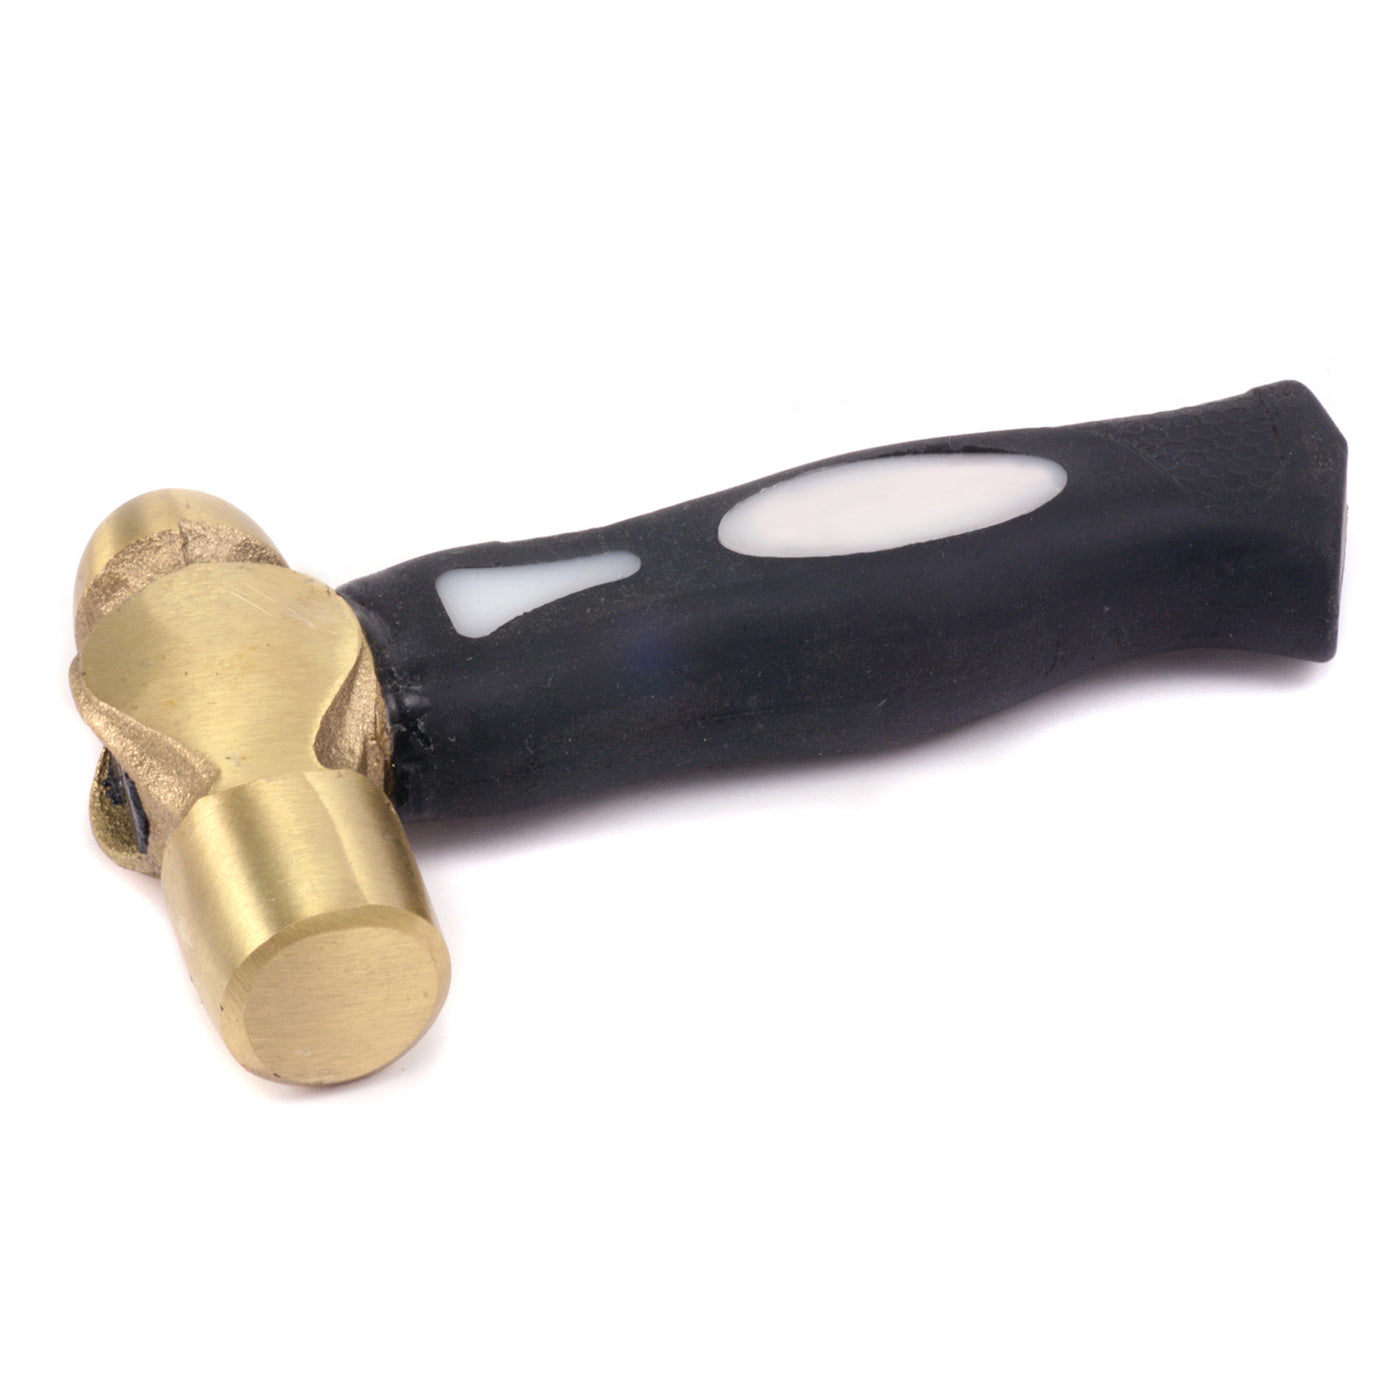 ImpressArt 1 Pound Metal Stamping Hammer, Brass